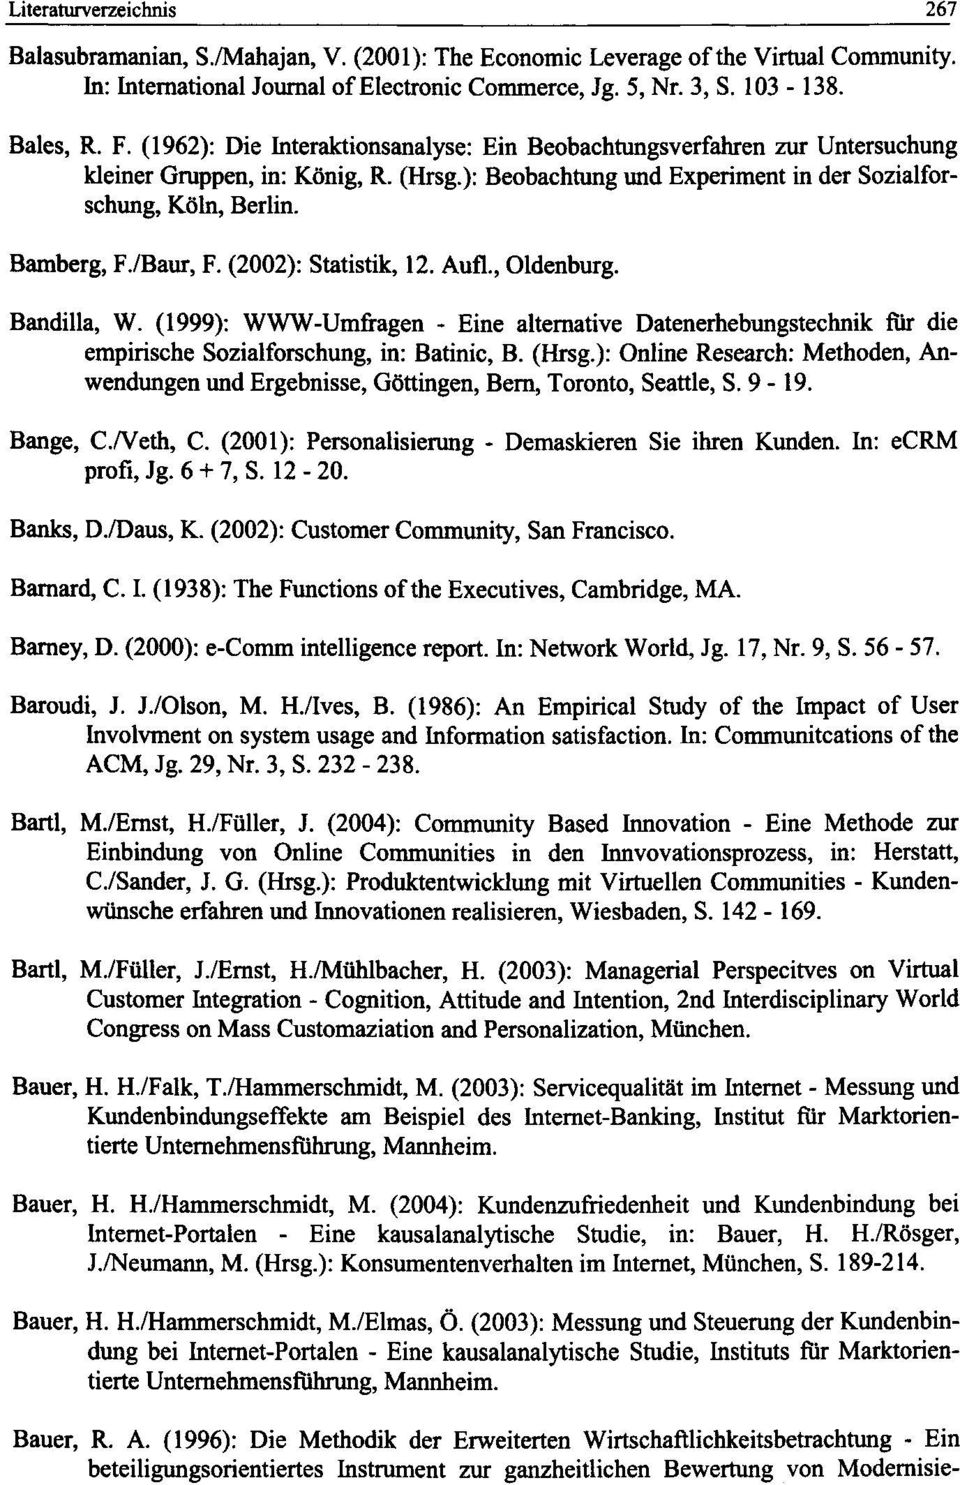 /Baur, F. (2002): Statistik, 12. Aufl., Oldenburg. Bandilla, W. (1999): WWW-Umfragen - Eine alternative Datenerhebungstechnik fi^ die empirische Sozialforschung, in: Batinic, B. (Hrsg.